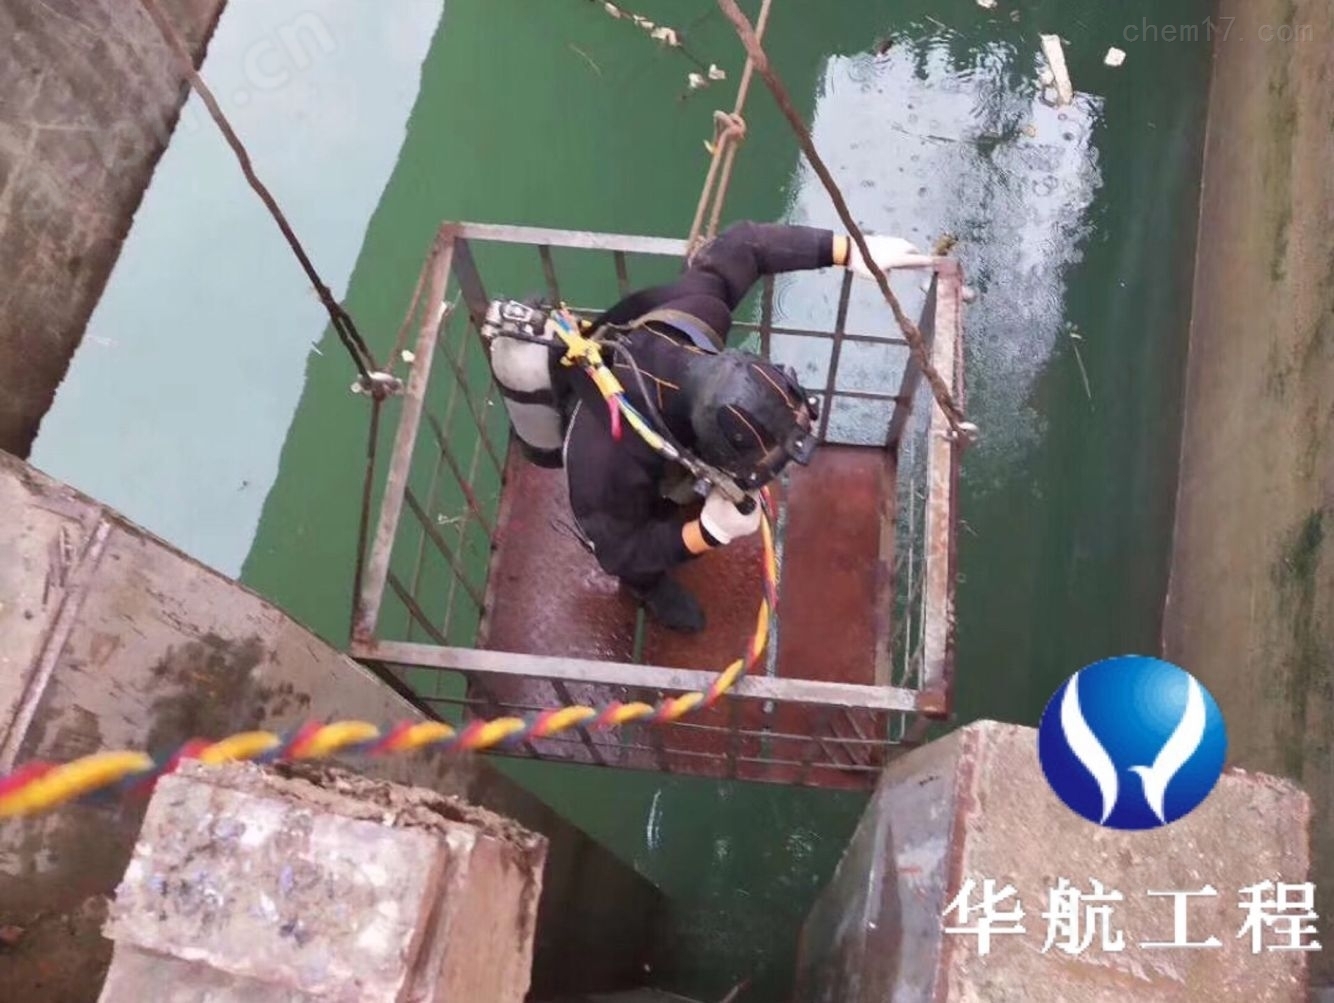 杭州潜水员水下作业多少钱